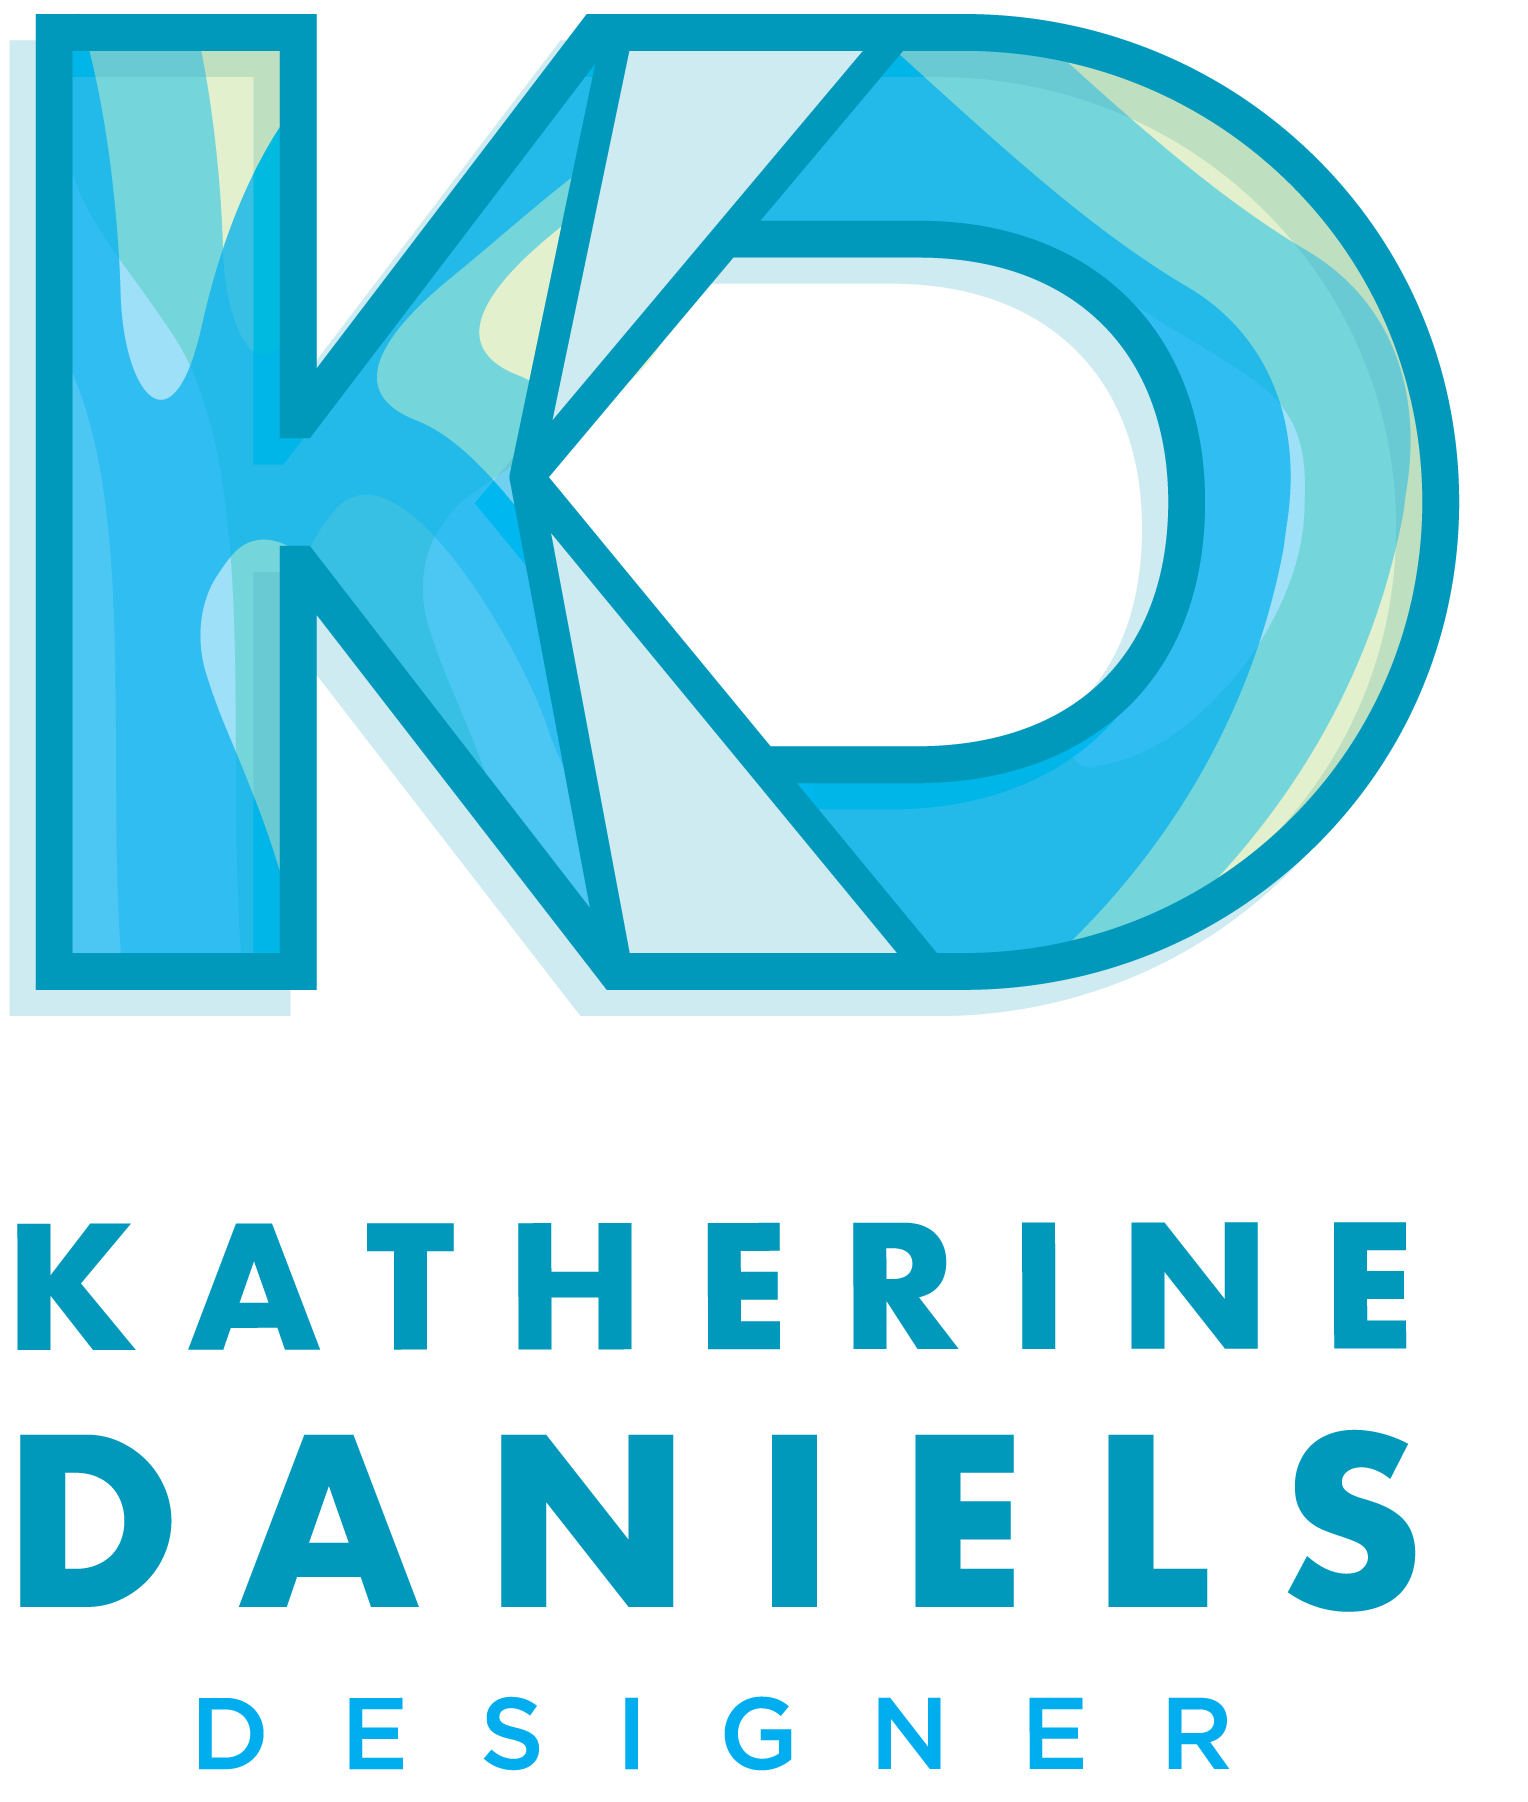 Katherine Daniels